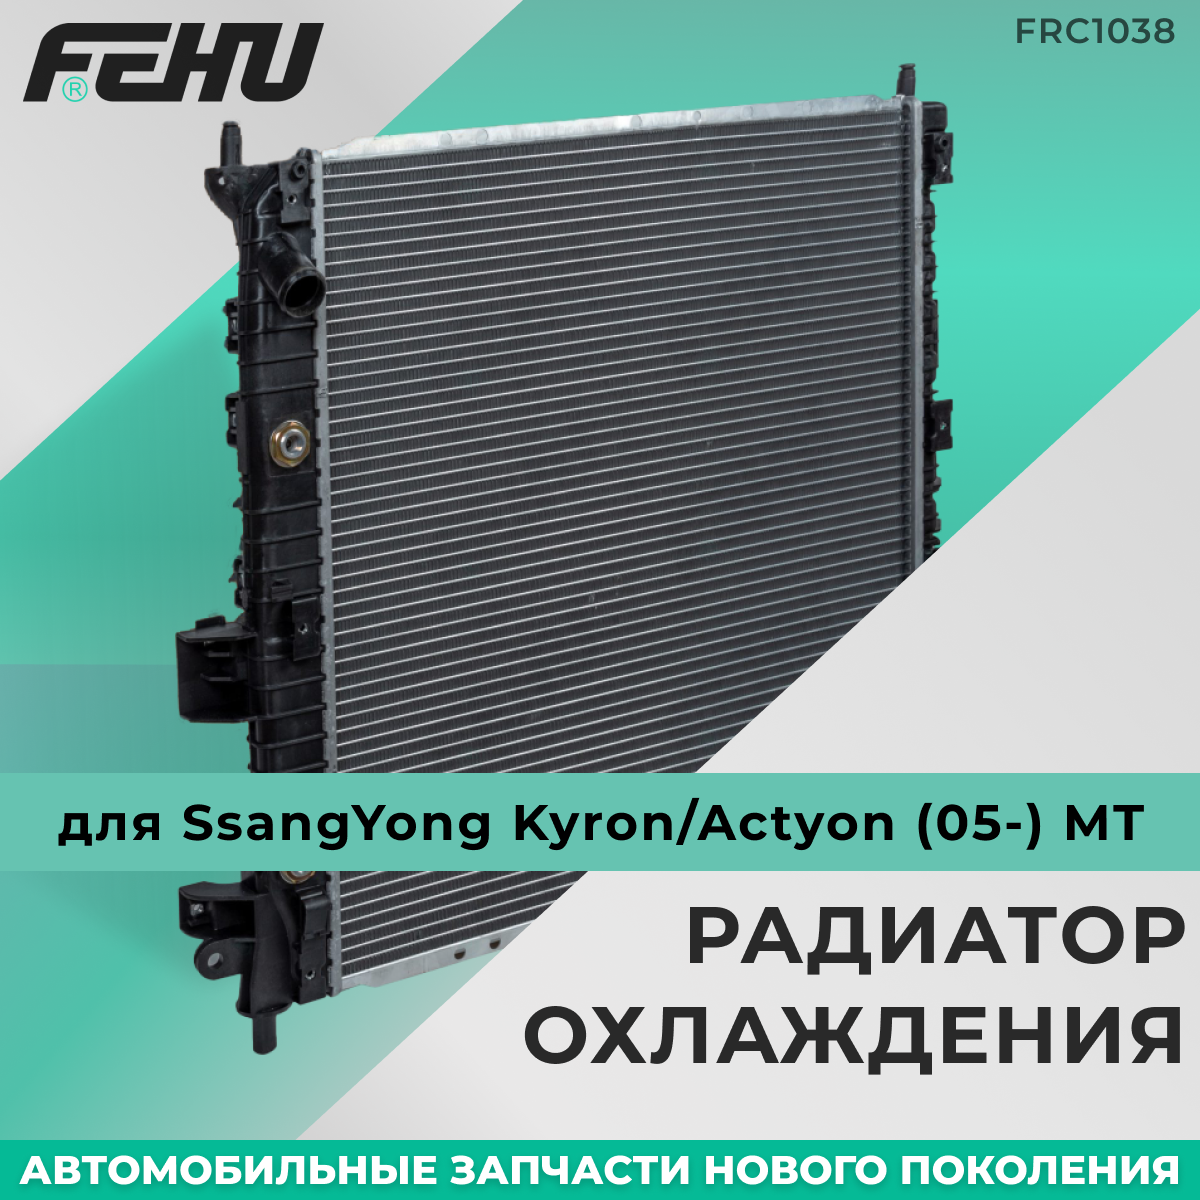 Радиатор охлаждения FEHU (феху) сборный Hyundai Getz (02-) 1.6 AT арт. 253101C150; 253101C356; 253101C350